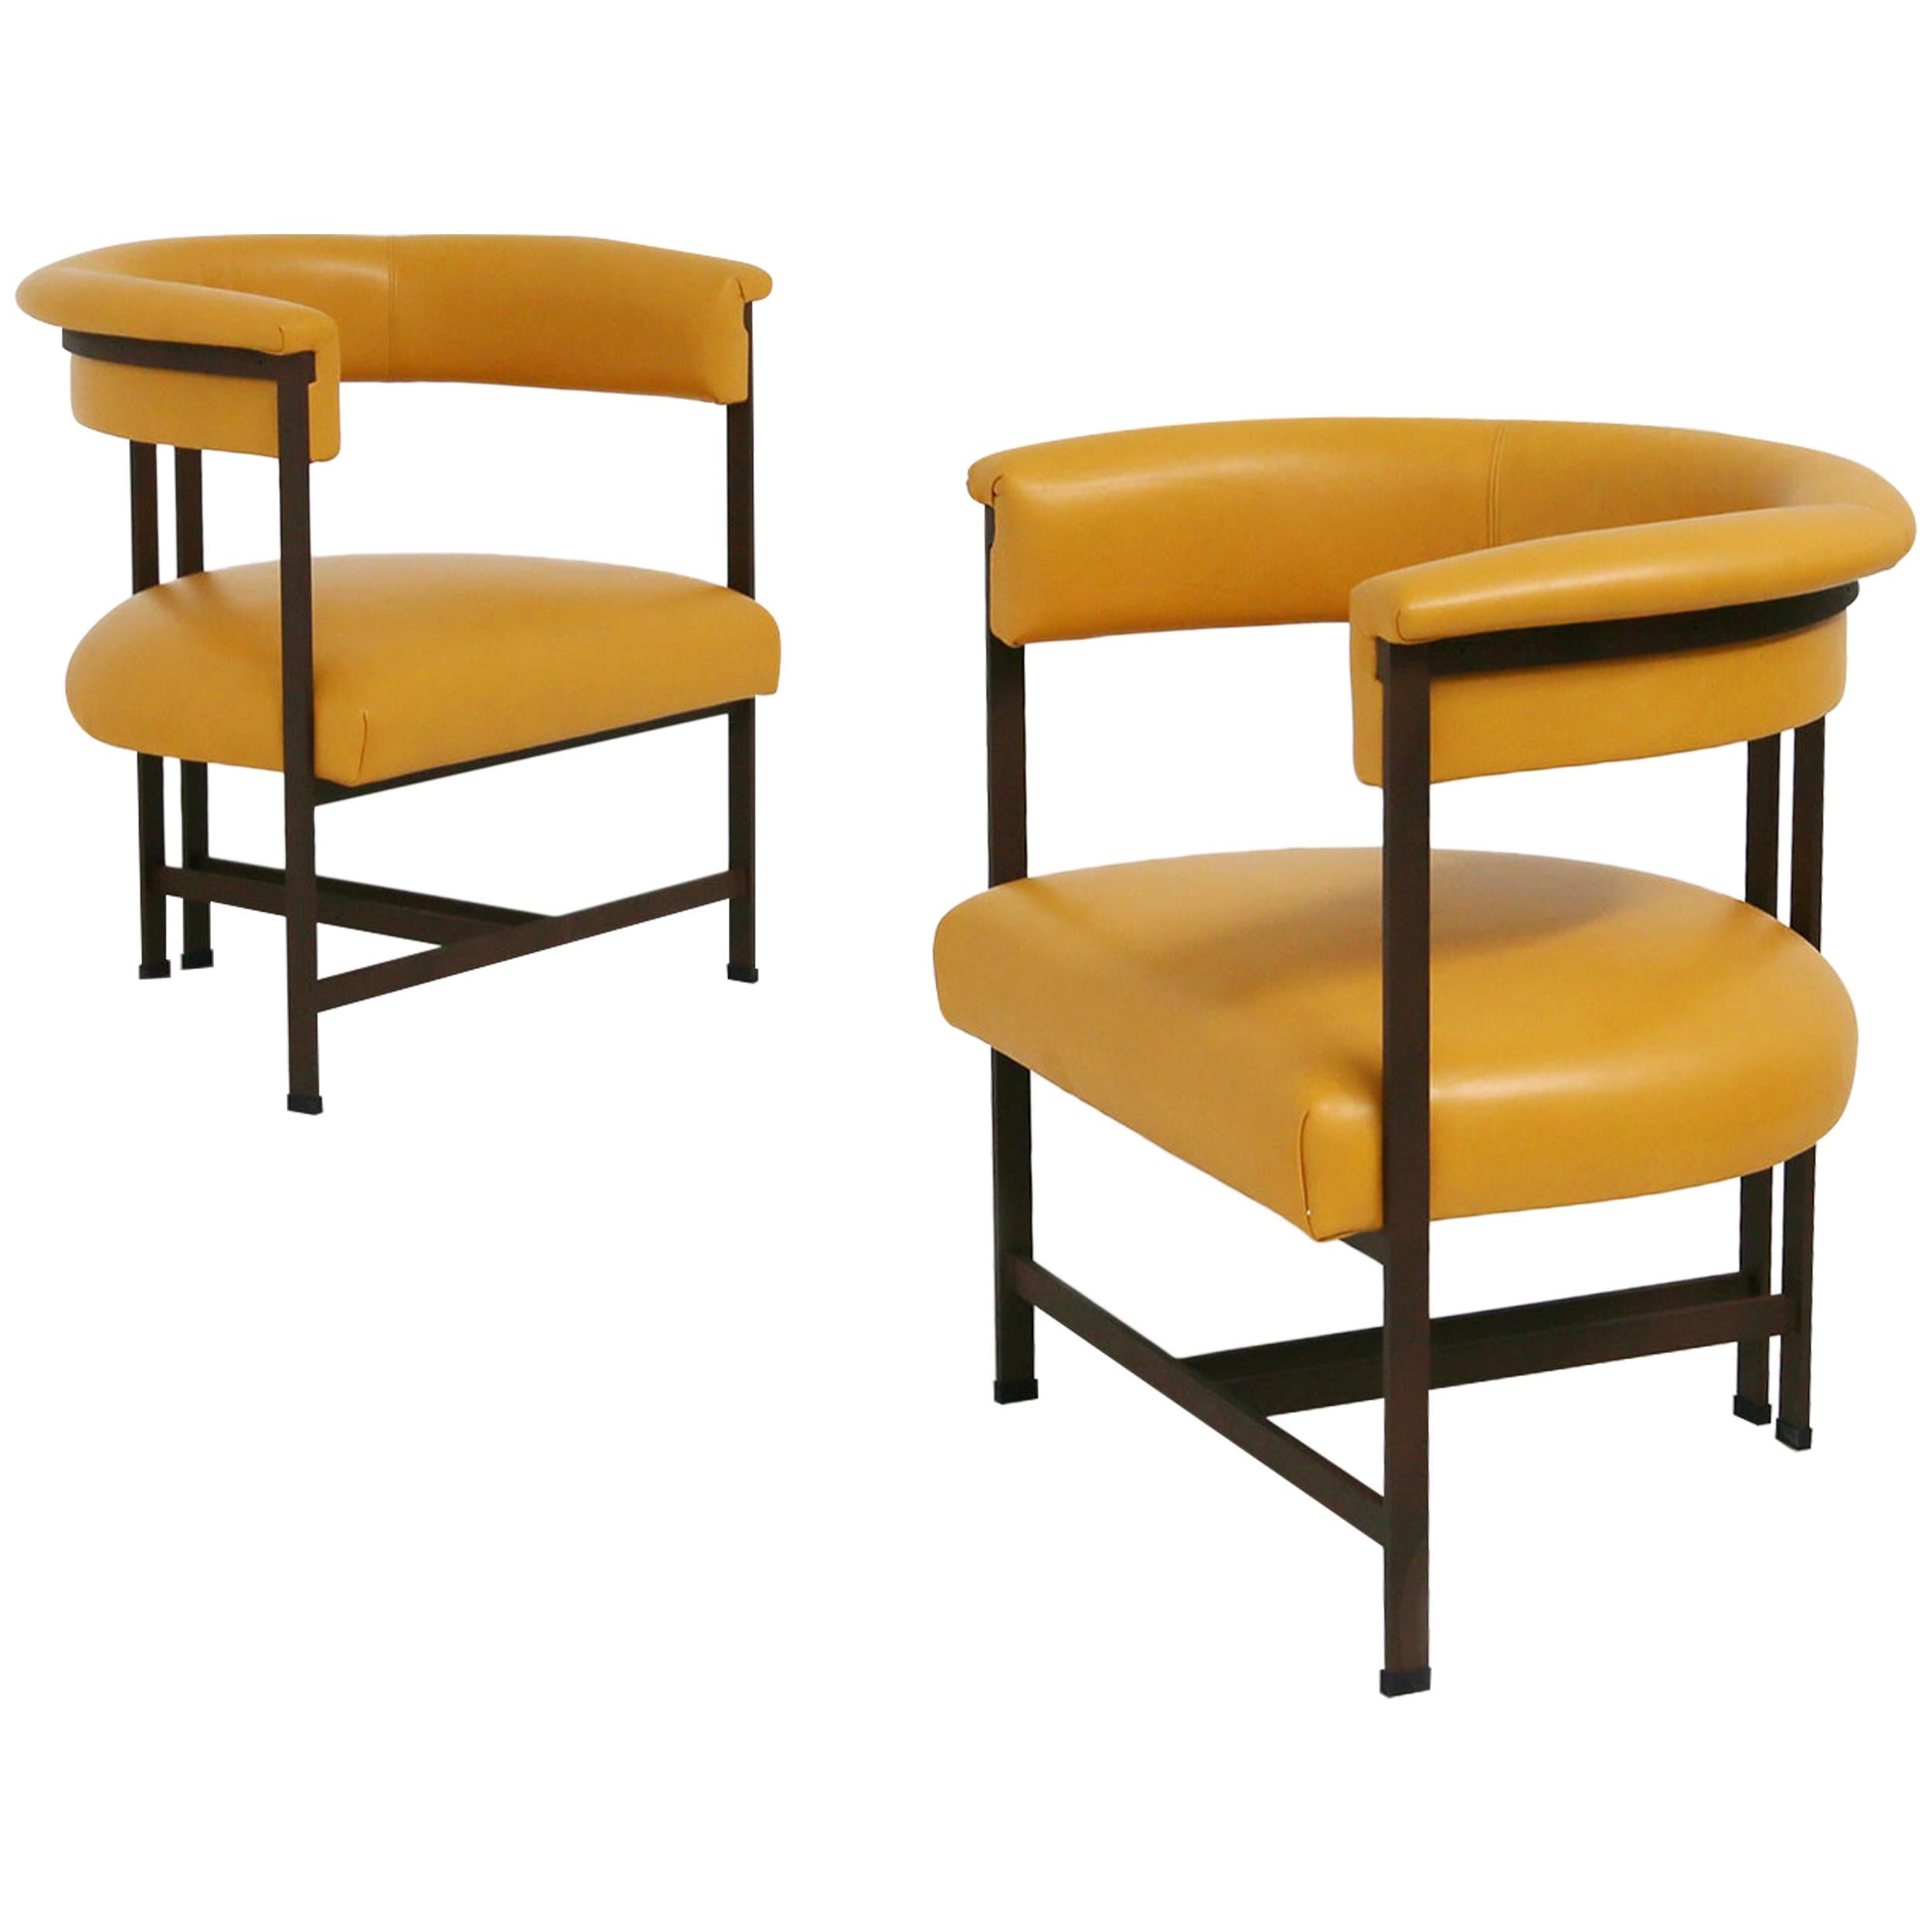 Sessel „Trentaperdieci“ von Michele Dal Bon, entworfen